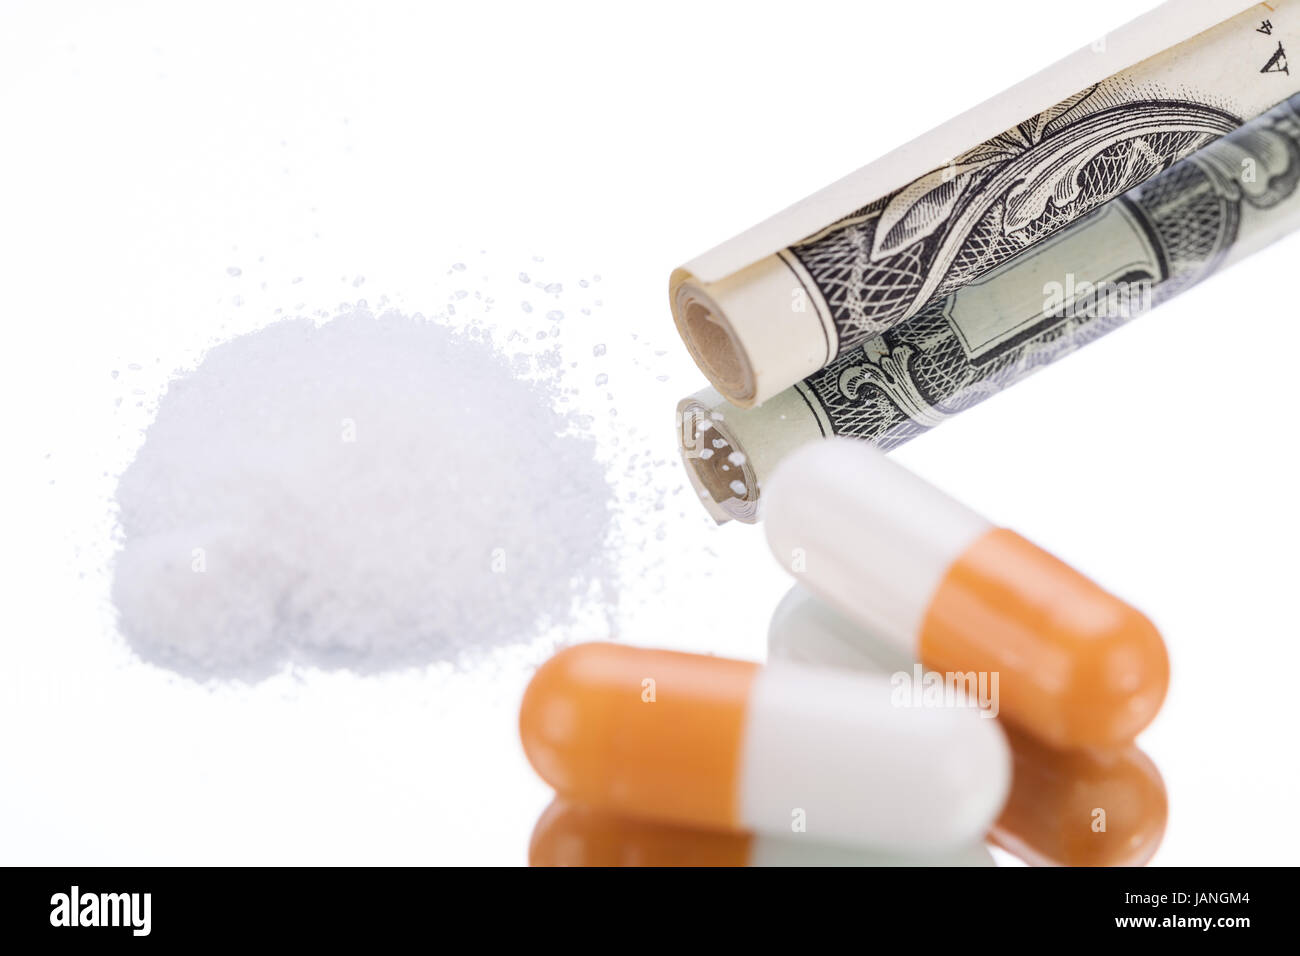 drogen tabletten kokain pillen rauschmittel auf dem tisch nahaufnahme sucht  Stock Photo - Alamy